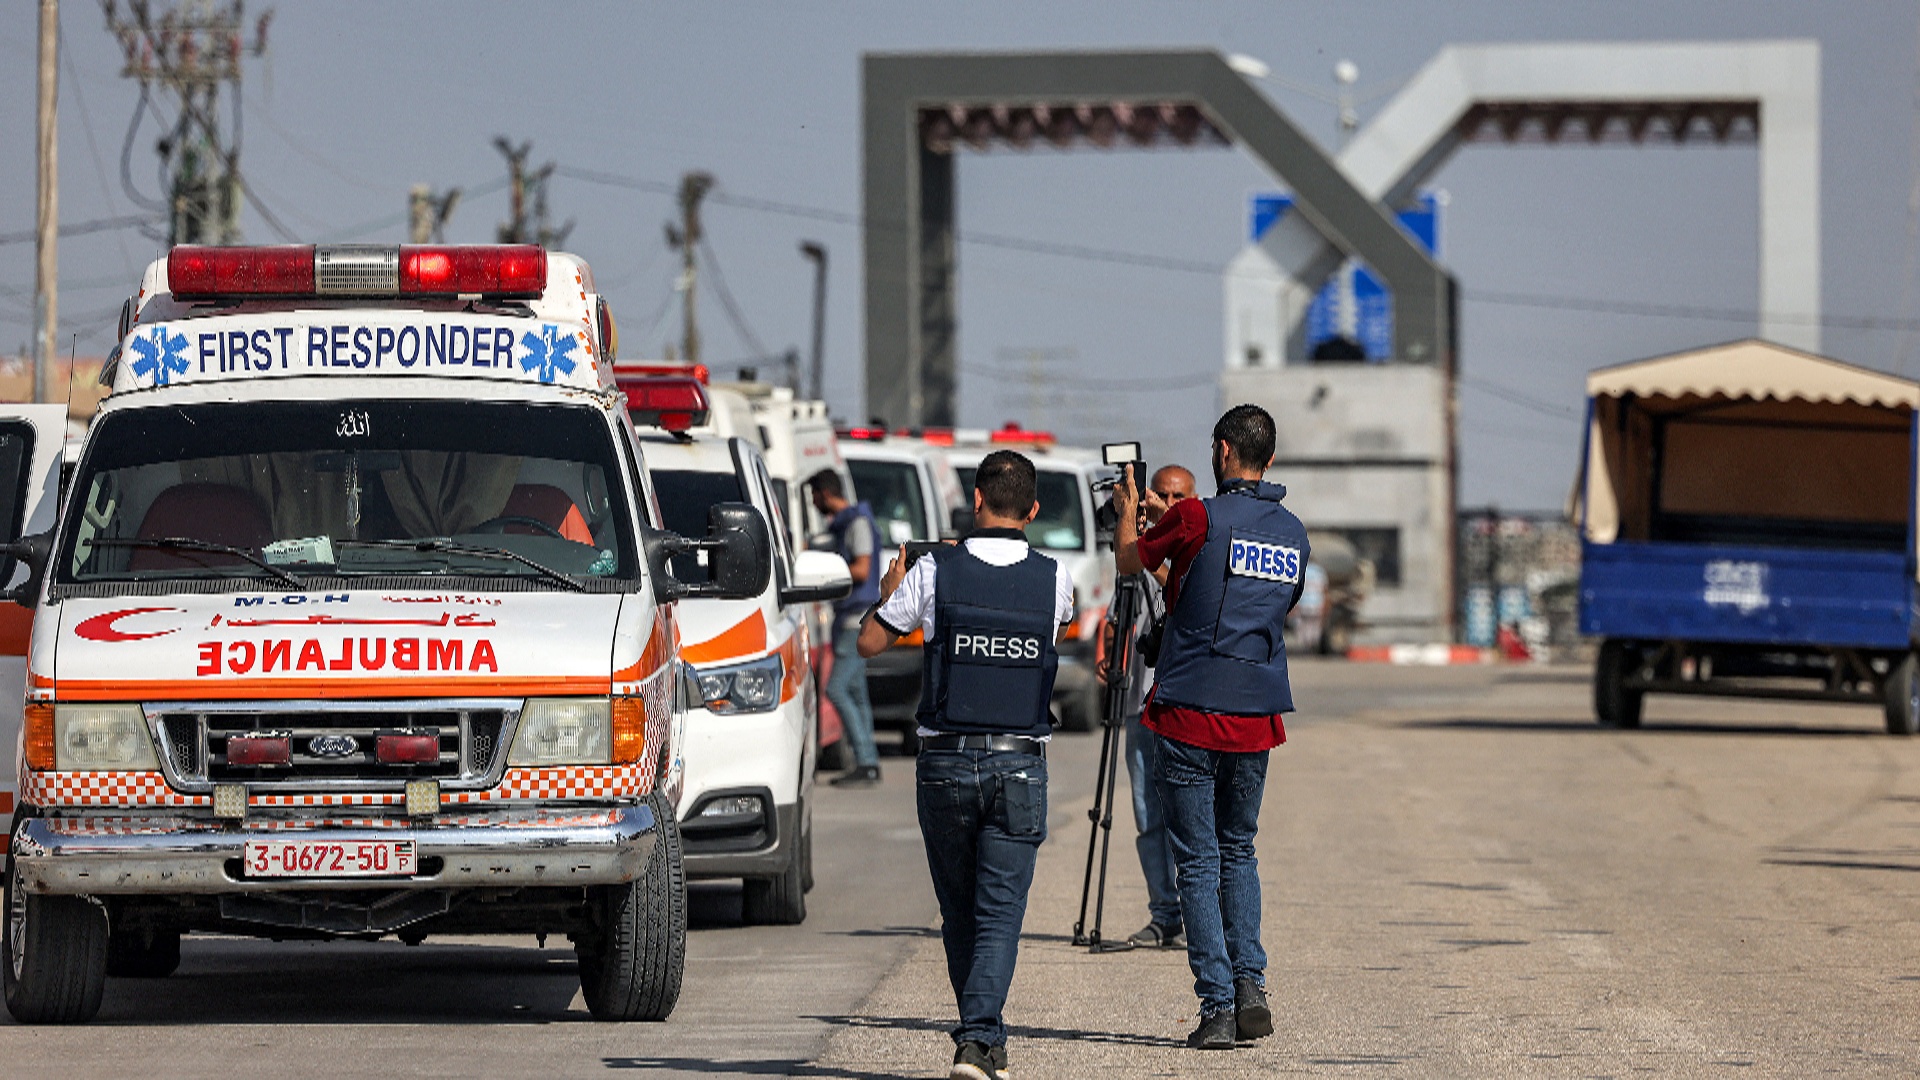 Сотни иностранцев и раненых палестинцев смогли покинуть сектор Газа